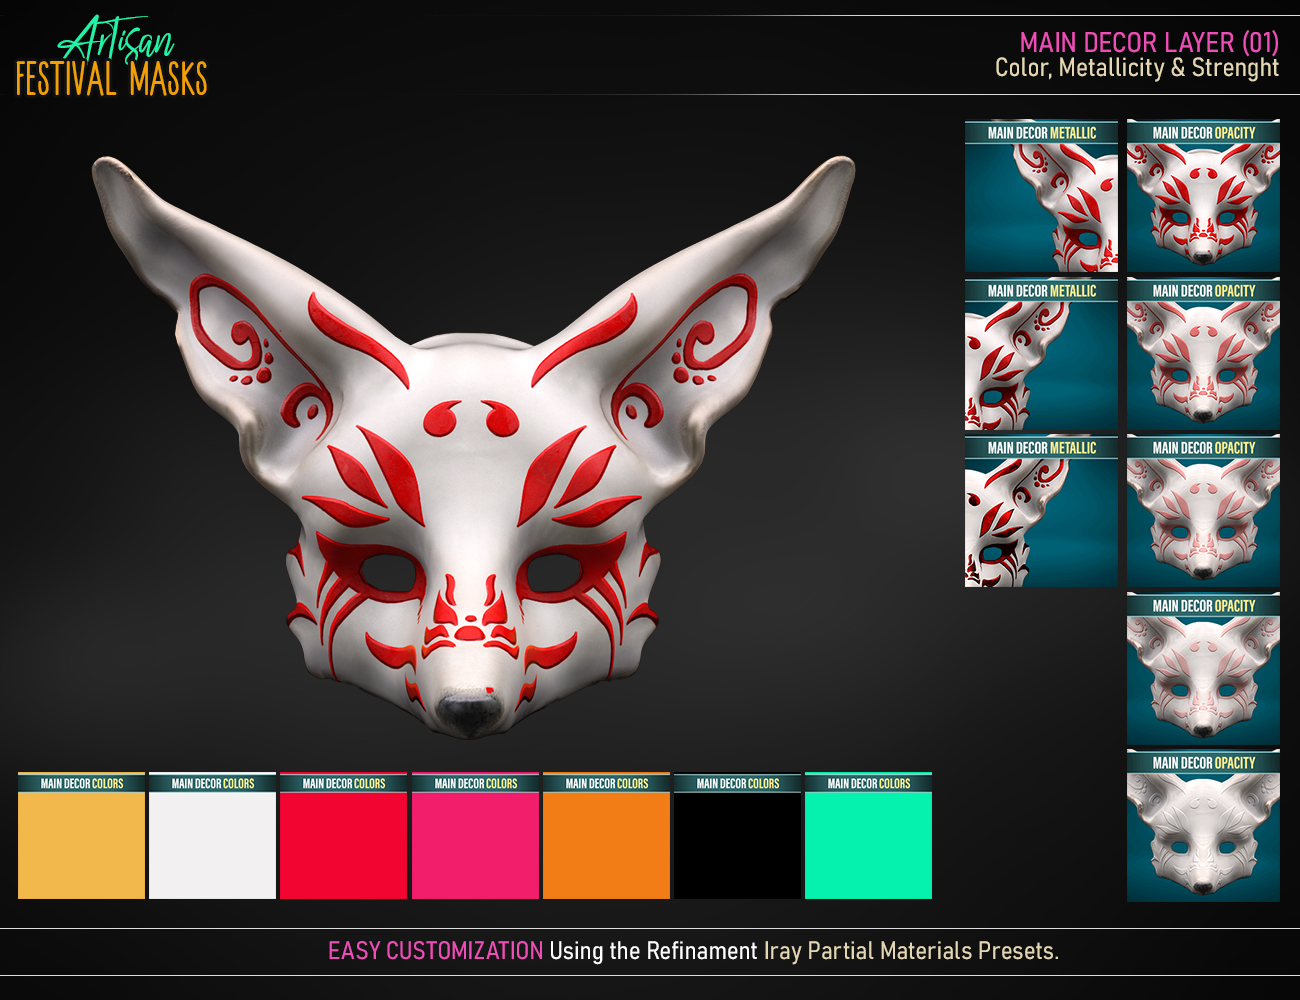 Artisan Festival Masks for Genesis 8 by: FenixPhoenixEsid, 3D Models by Daz 3D